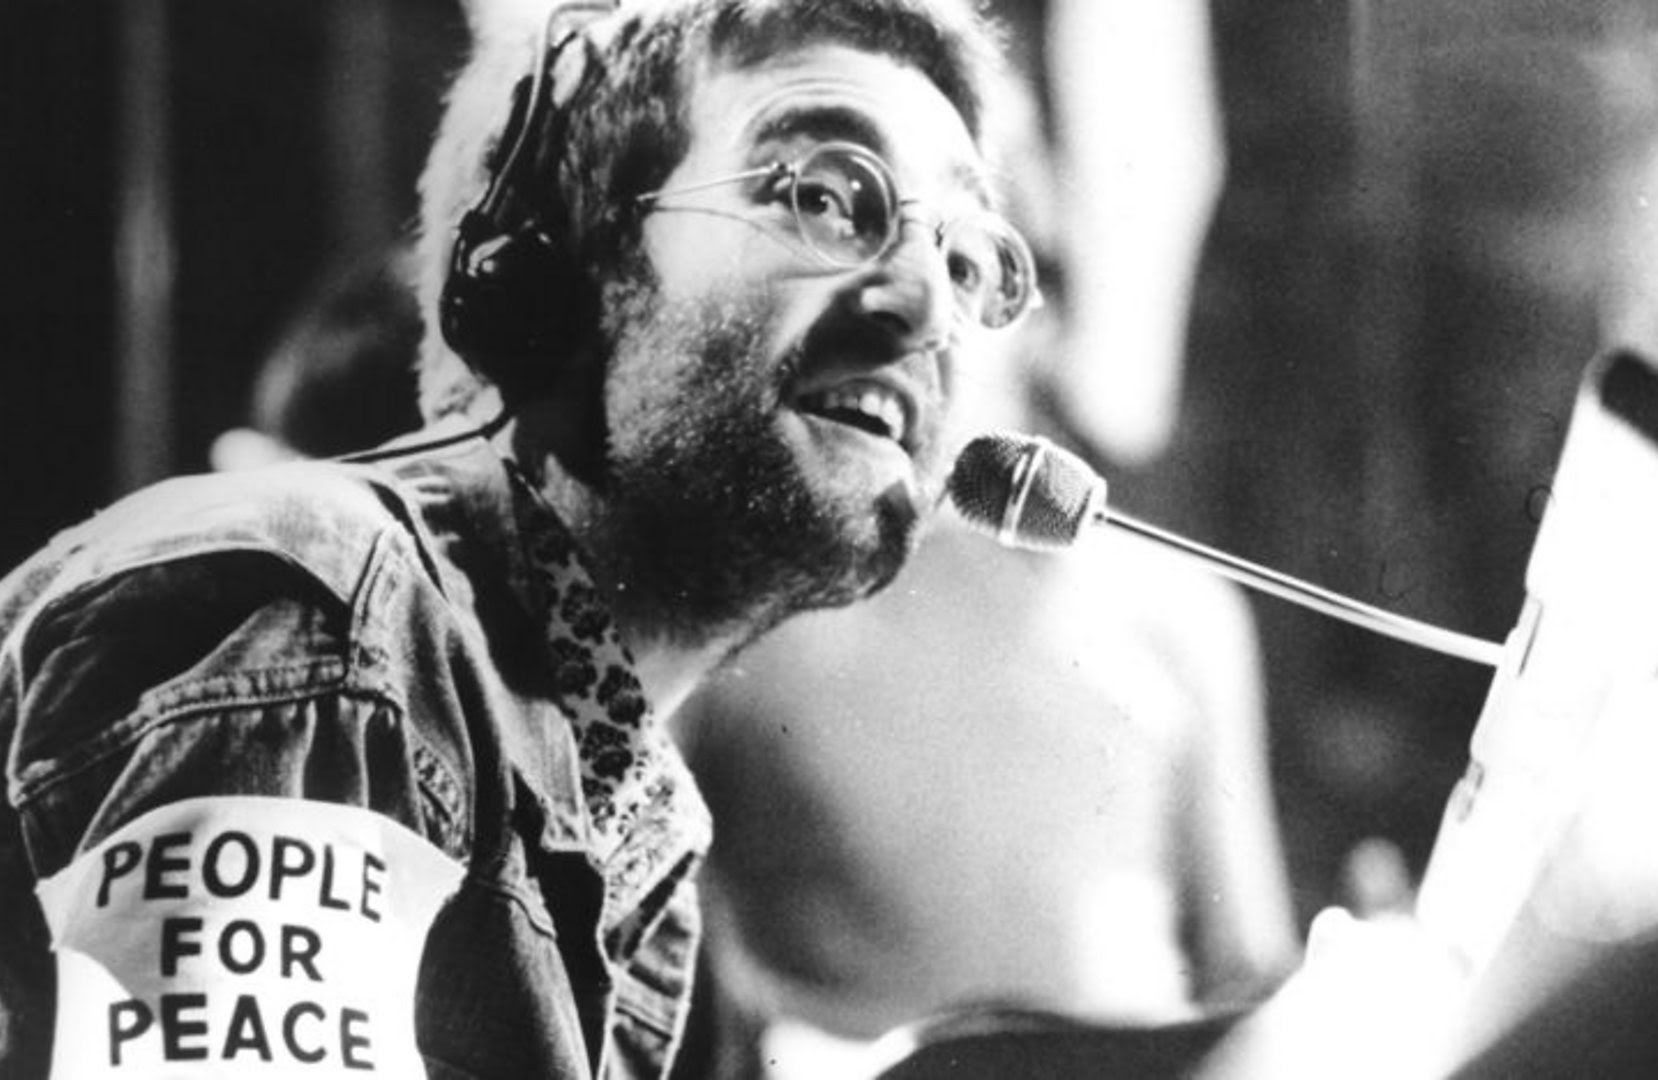 Conmemora TV UNAM el 80 aniversario del nacimiento de John Lennon con el documental Imagina, imagina